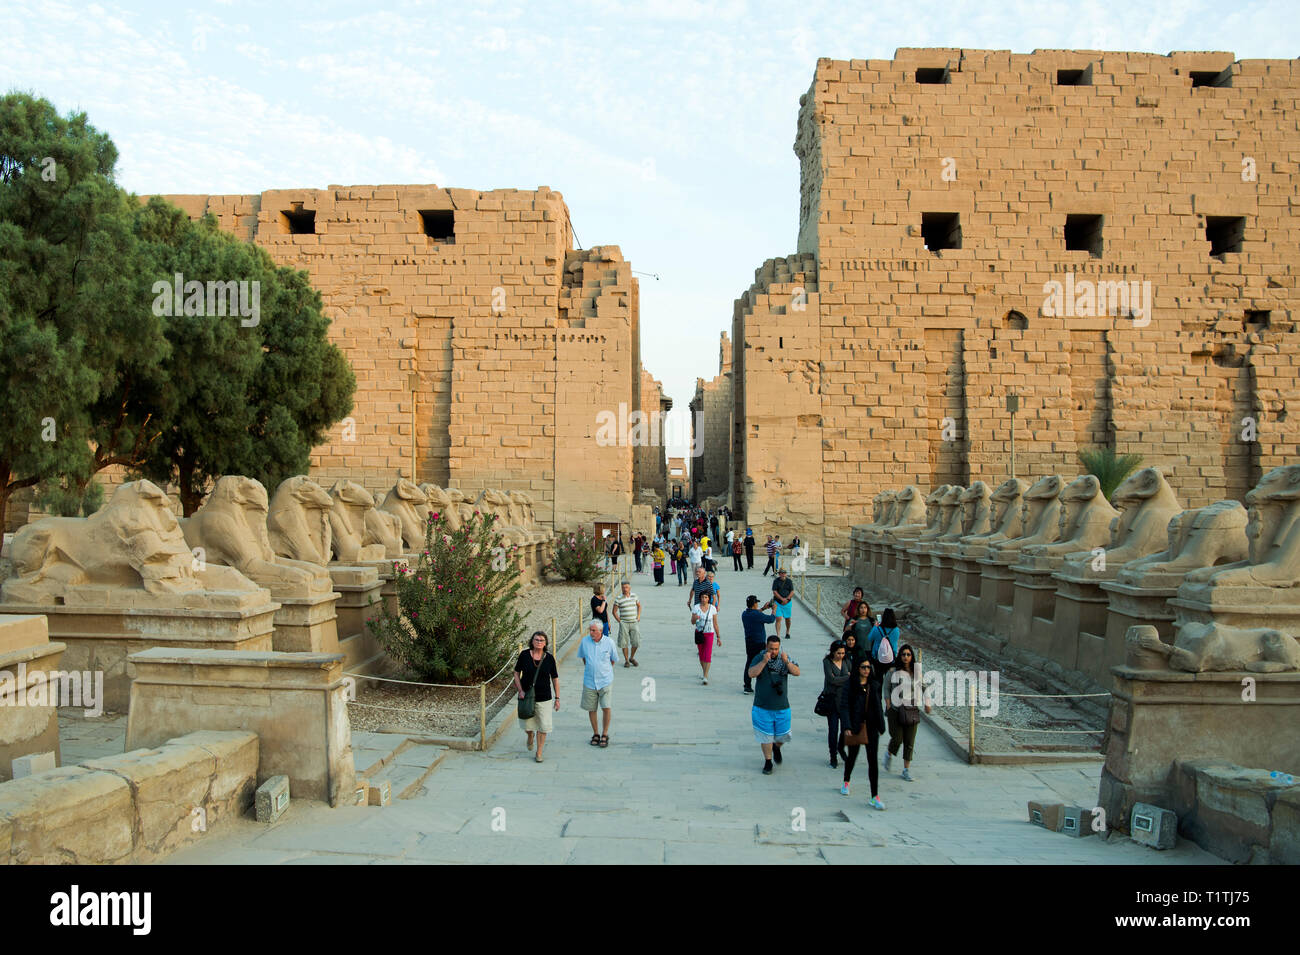 Ägypten, Luxor, Karnak-Tempel, vor dem Widdersphingen Torbau des ersten pilones, westlicher Eingang zur Tempelanlage Foto de stock